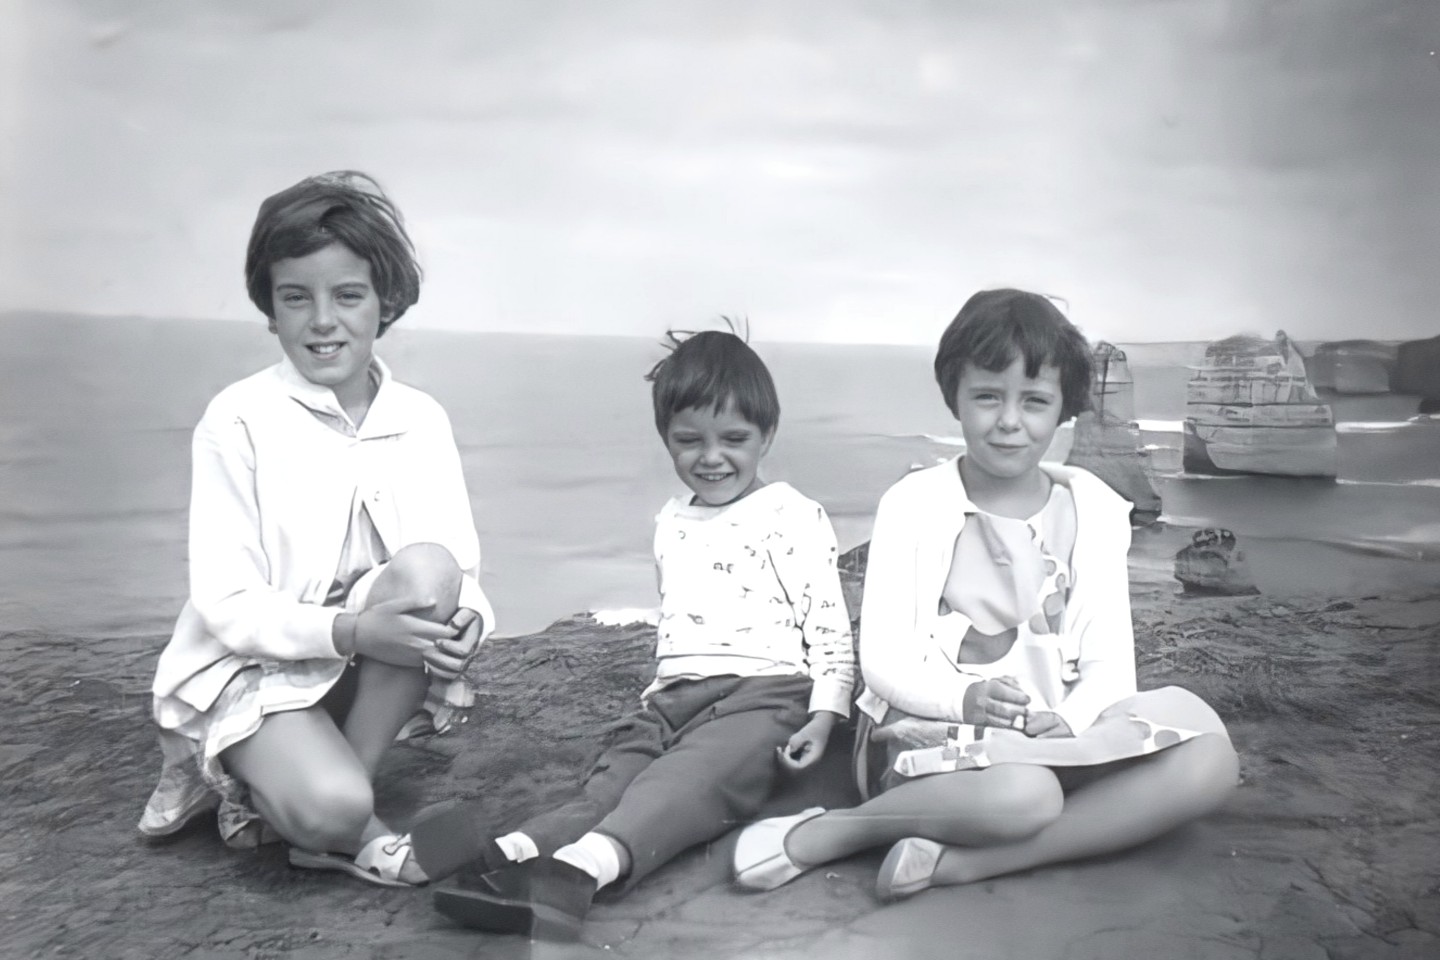 Jane, Grant a Arnna Beaumont, fotografovaly během rodinného výletu do Dvanácti apoštolů v roce 1965 poblíž Port Campbell ve Victorii v Austrálii.